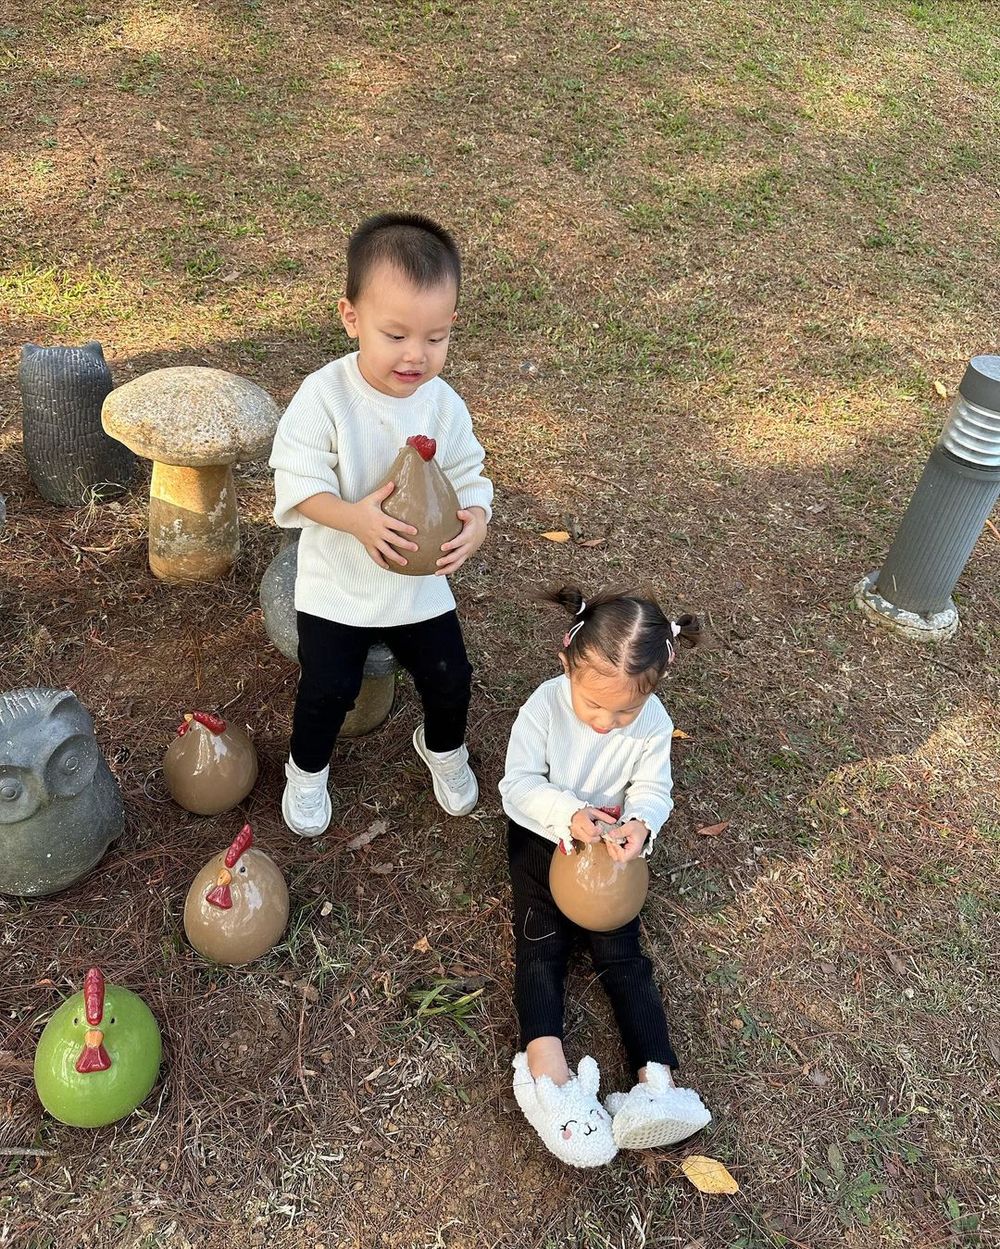  
Cặp sinh đôi được ba mẹ đưa đi du lịch nhiều nơi. (Ảnh: Instagram henrylisaleon) - Tin sao Viet - Tin tuc sao Viet - Scandal sao Viet - Tin tuc cua Sao - Tin cua Sao